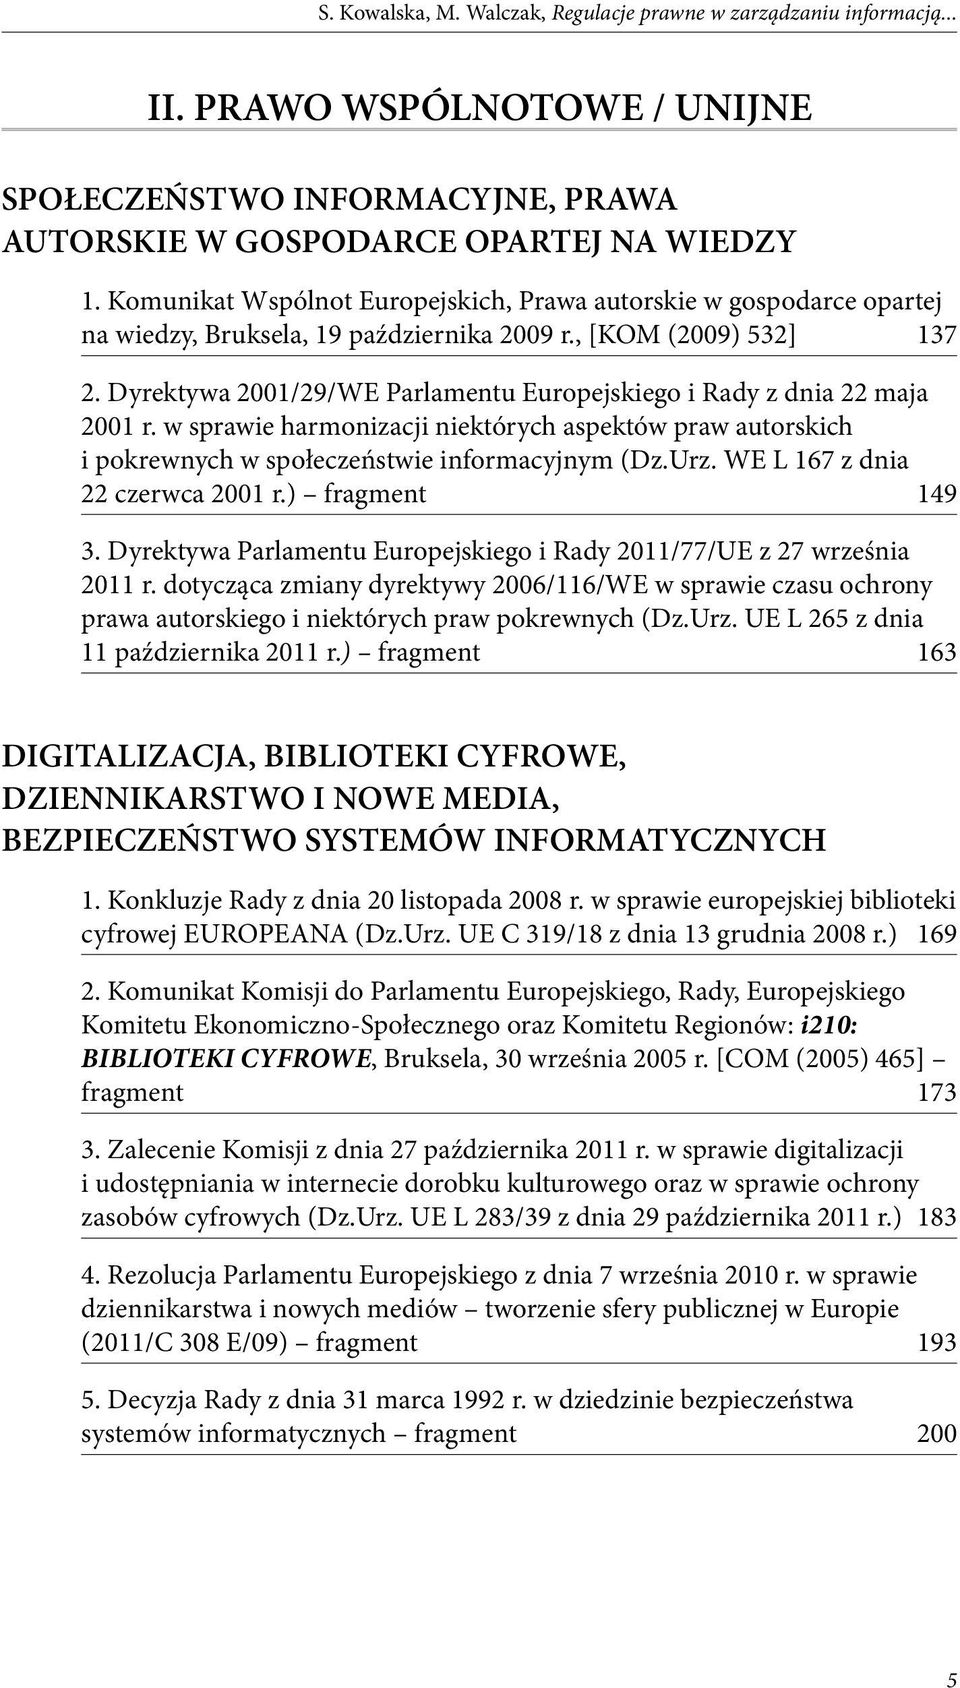 Dyrektywa 2001/29/WE Parlamentu Europejskiego i Rady z dnia 22 maja 2001 r. w sprawie harmonizacji niektórych aspektów praw autorskich i pokrewnych w społeczeństwie informacyjnym (Dz.Urz.